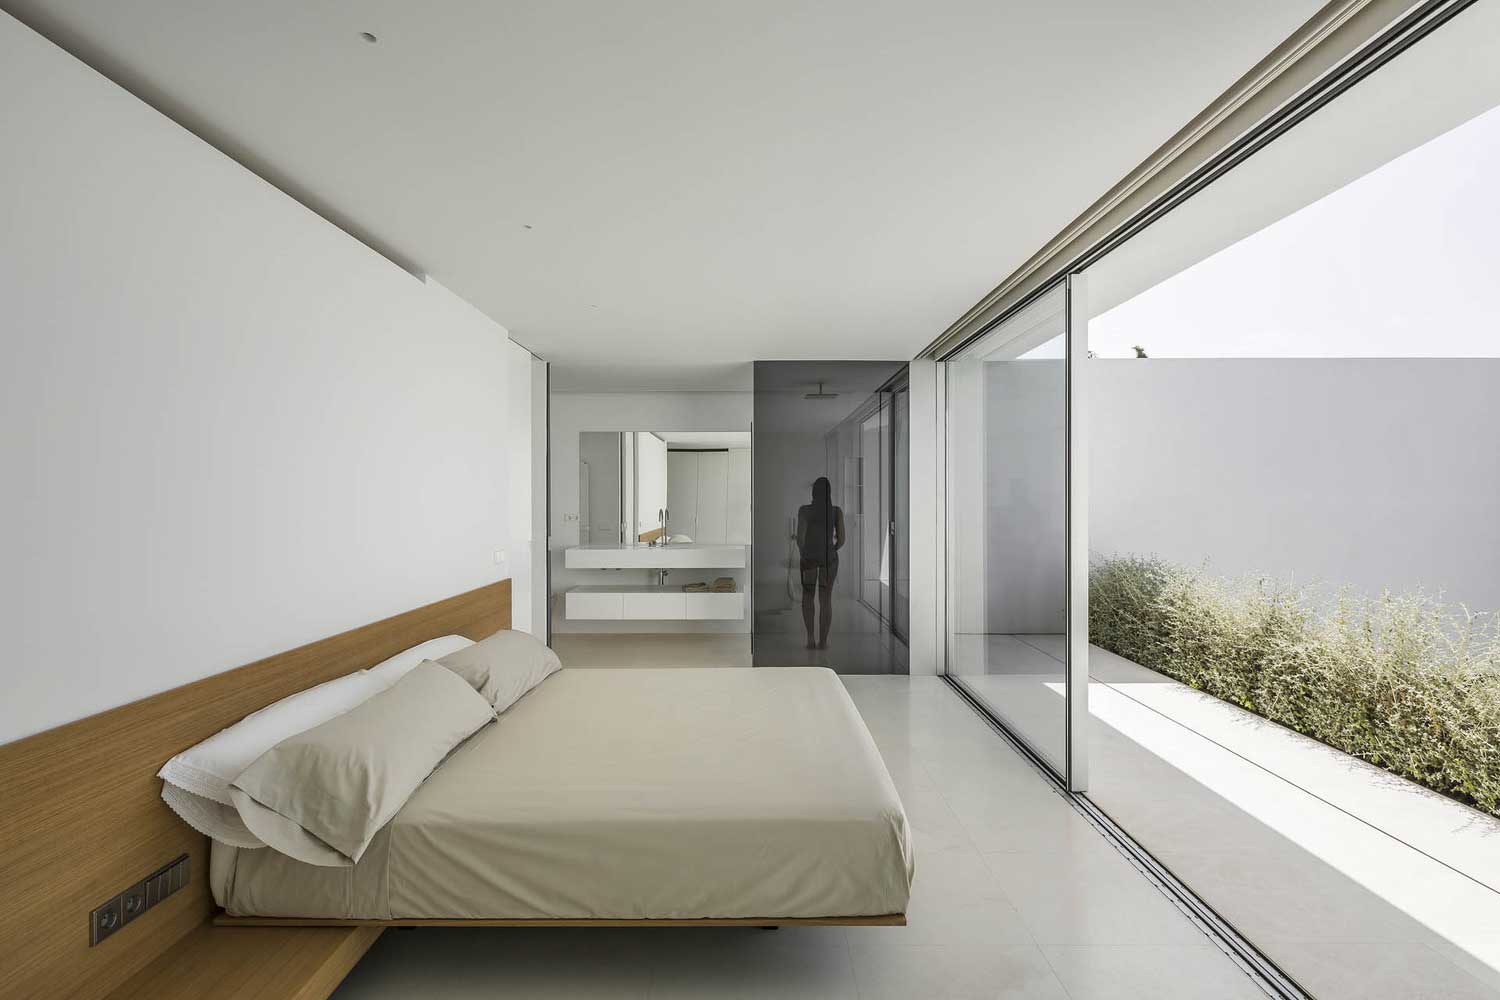 Entwurf eines schmalen Schlafzimmers mit einem Fenster am Ende